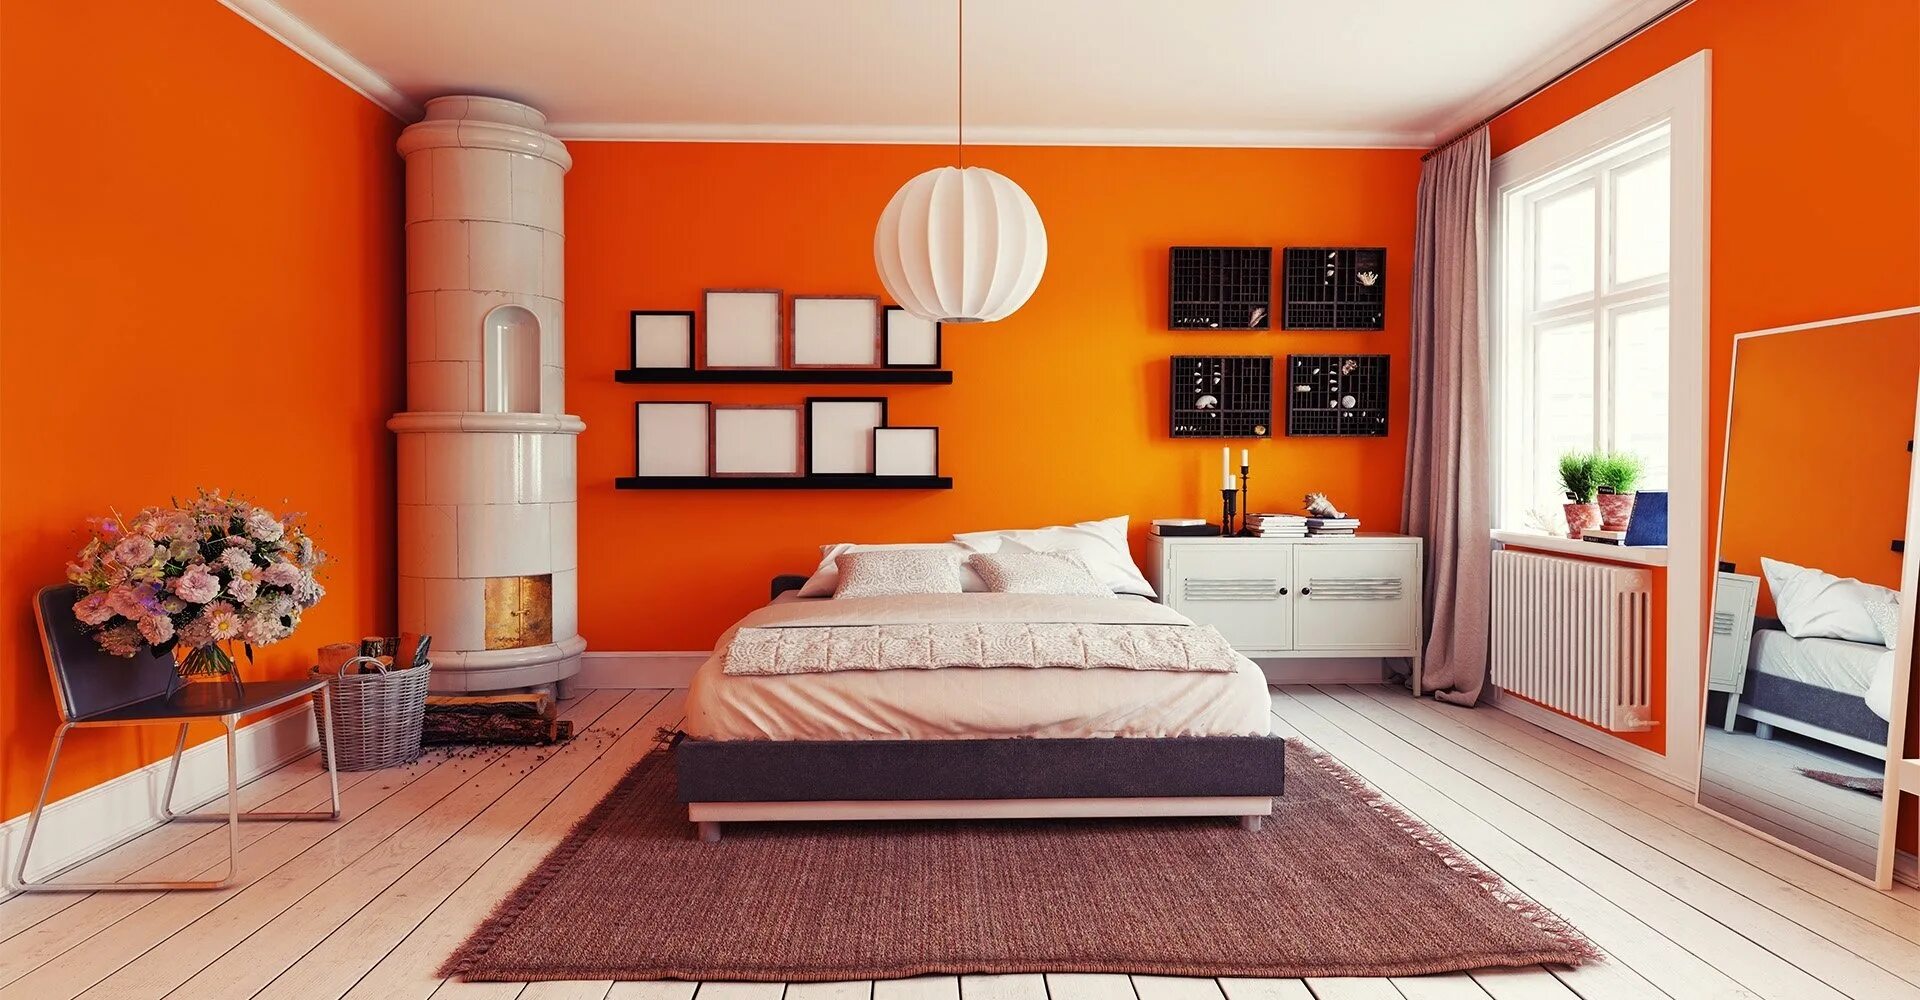 Оранжевая спальня. Комната с оранжевыми стенами. Спальня в оранжевых тонах. Оранжевый в интерьере спальни. Сочетание цвета мебели в стенами